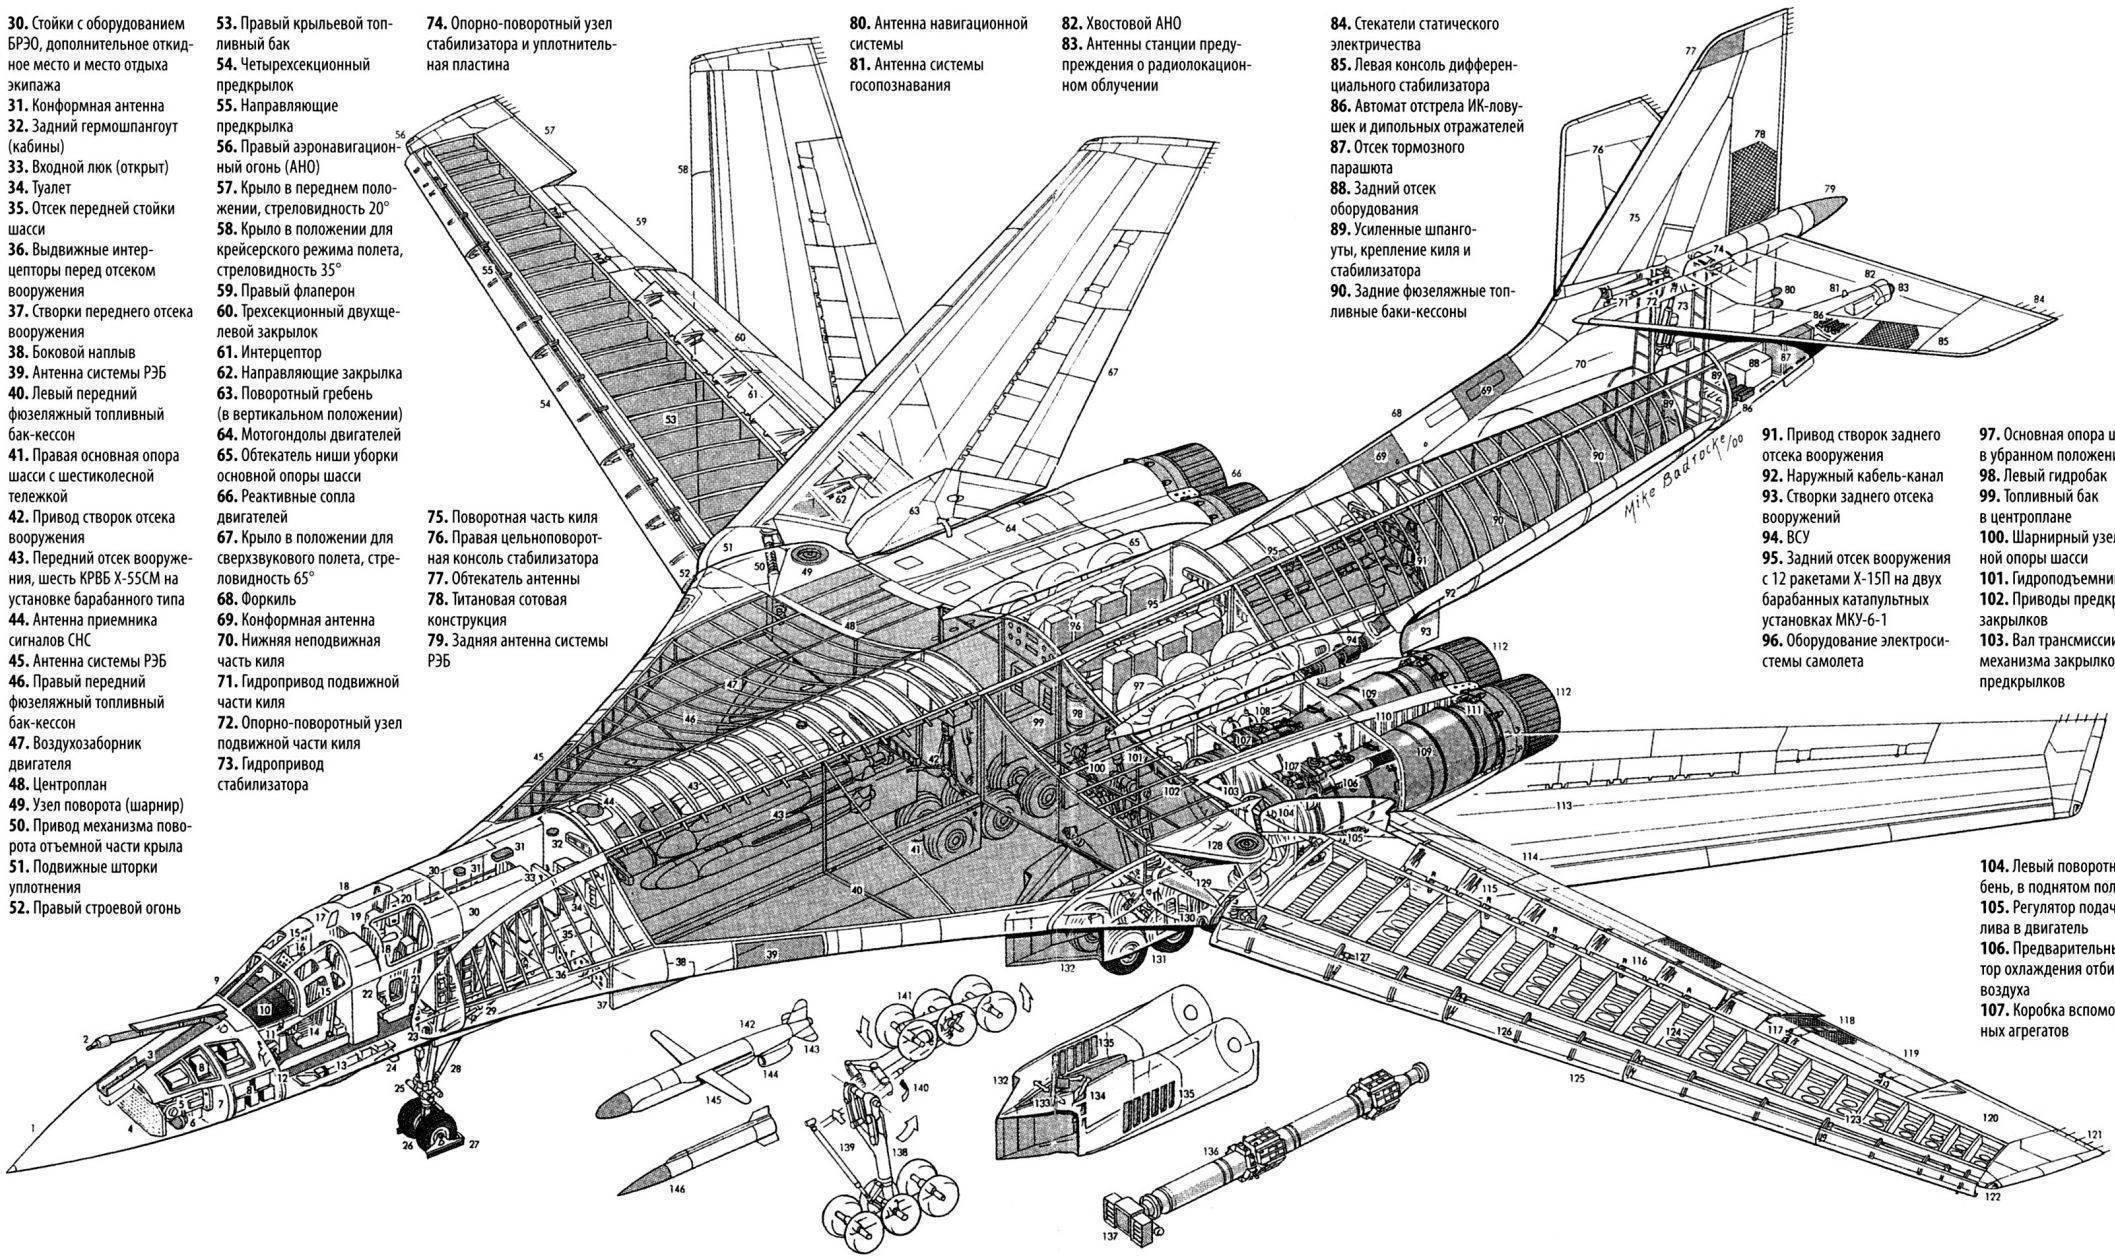 Бомбардировщик ту-160 «белый лебедь» стратегического назначения